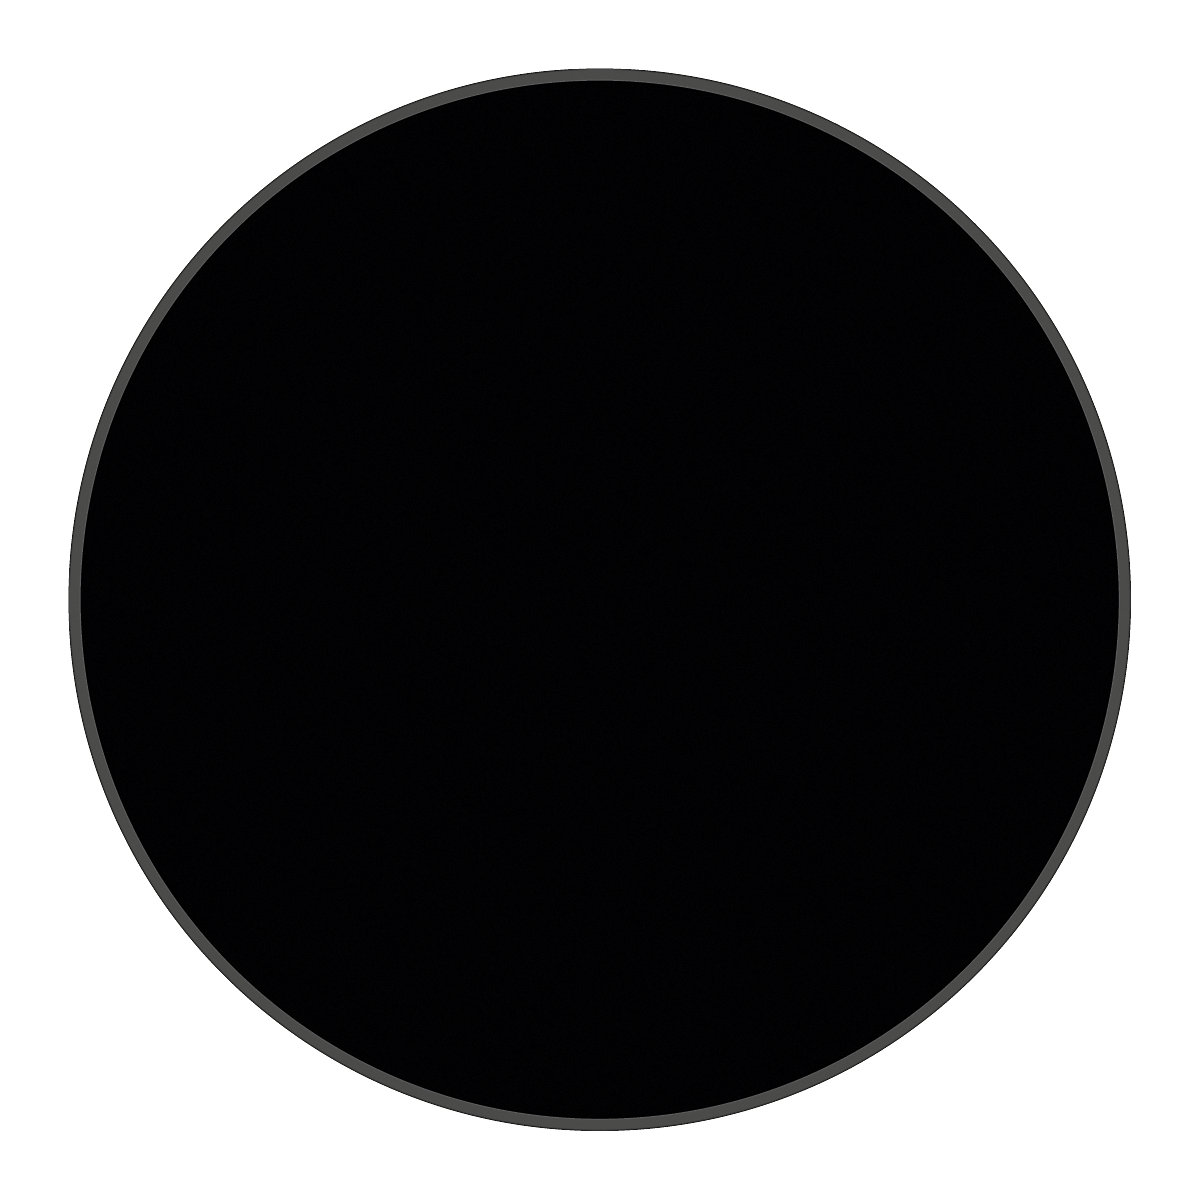 Podlahové značení z PVC, tvar kruhu, bal.j. 100 ks, černá